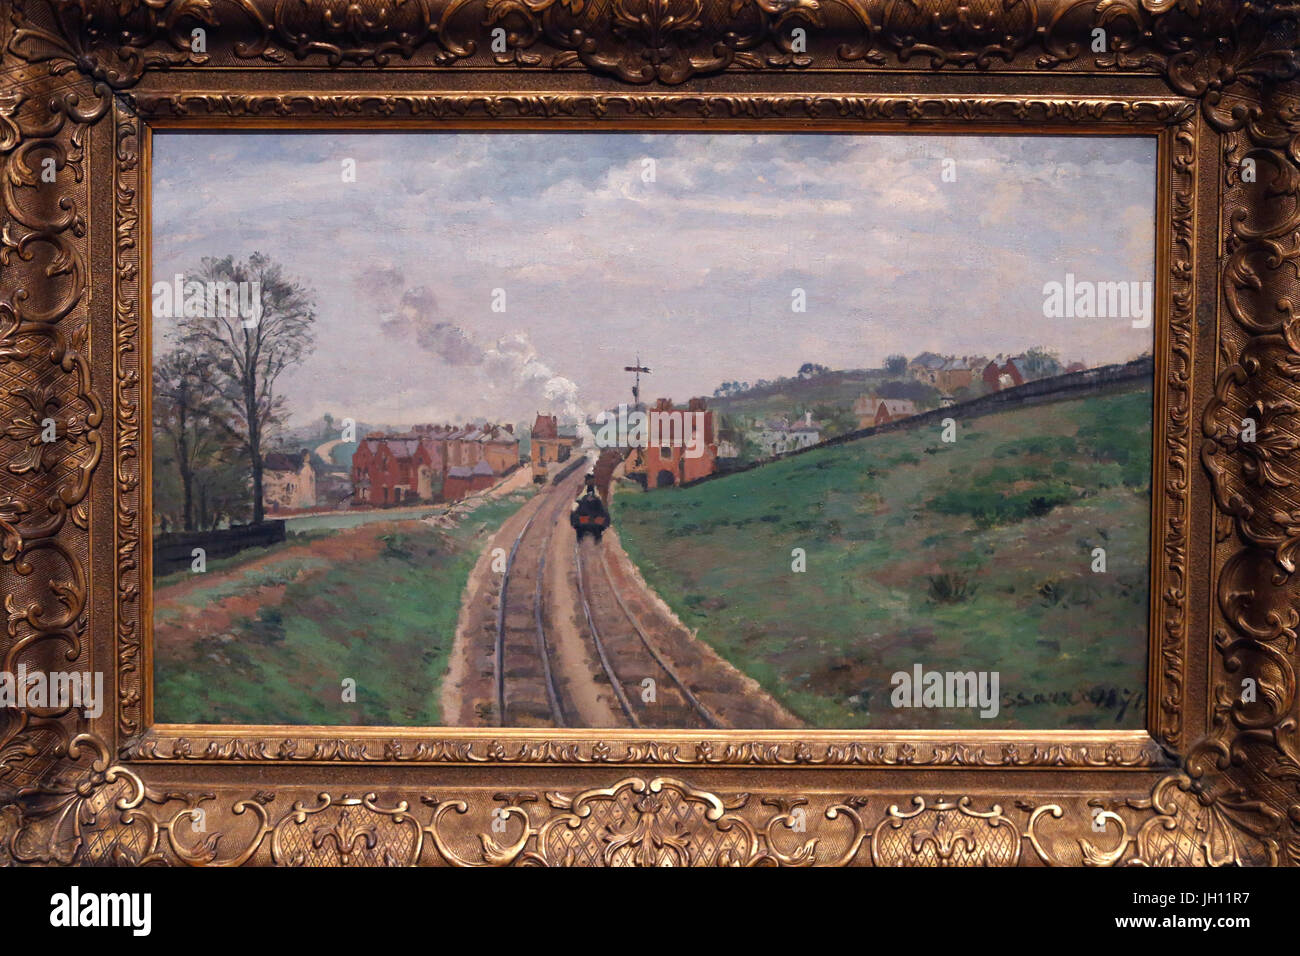 La Courtauld Gallery. Camille Pissaro. Señorío Lane, Estación de Dulwich. 1871. Óleo sobre lienzo. Reino Unido. Foto de stock